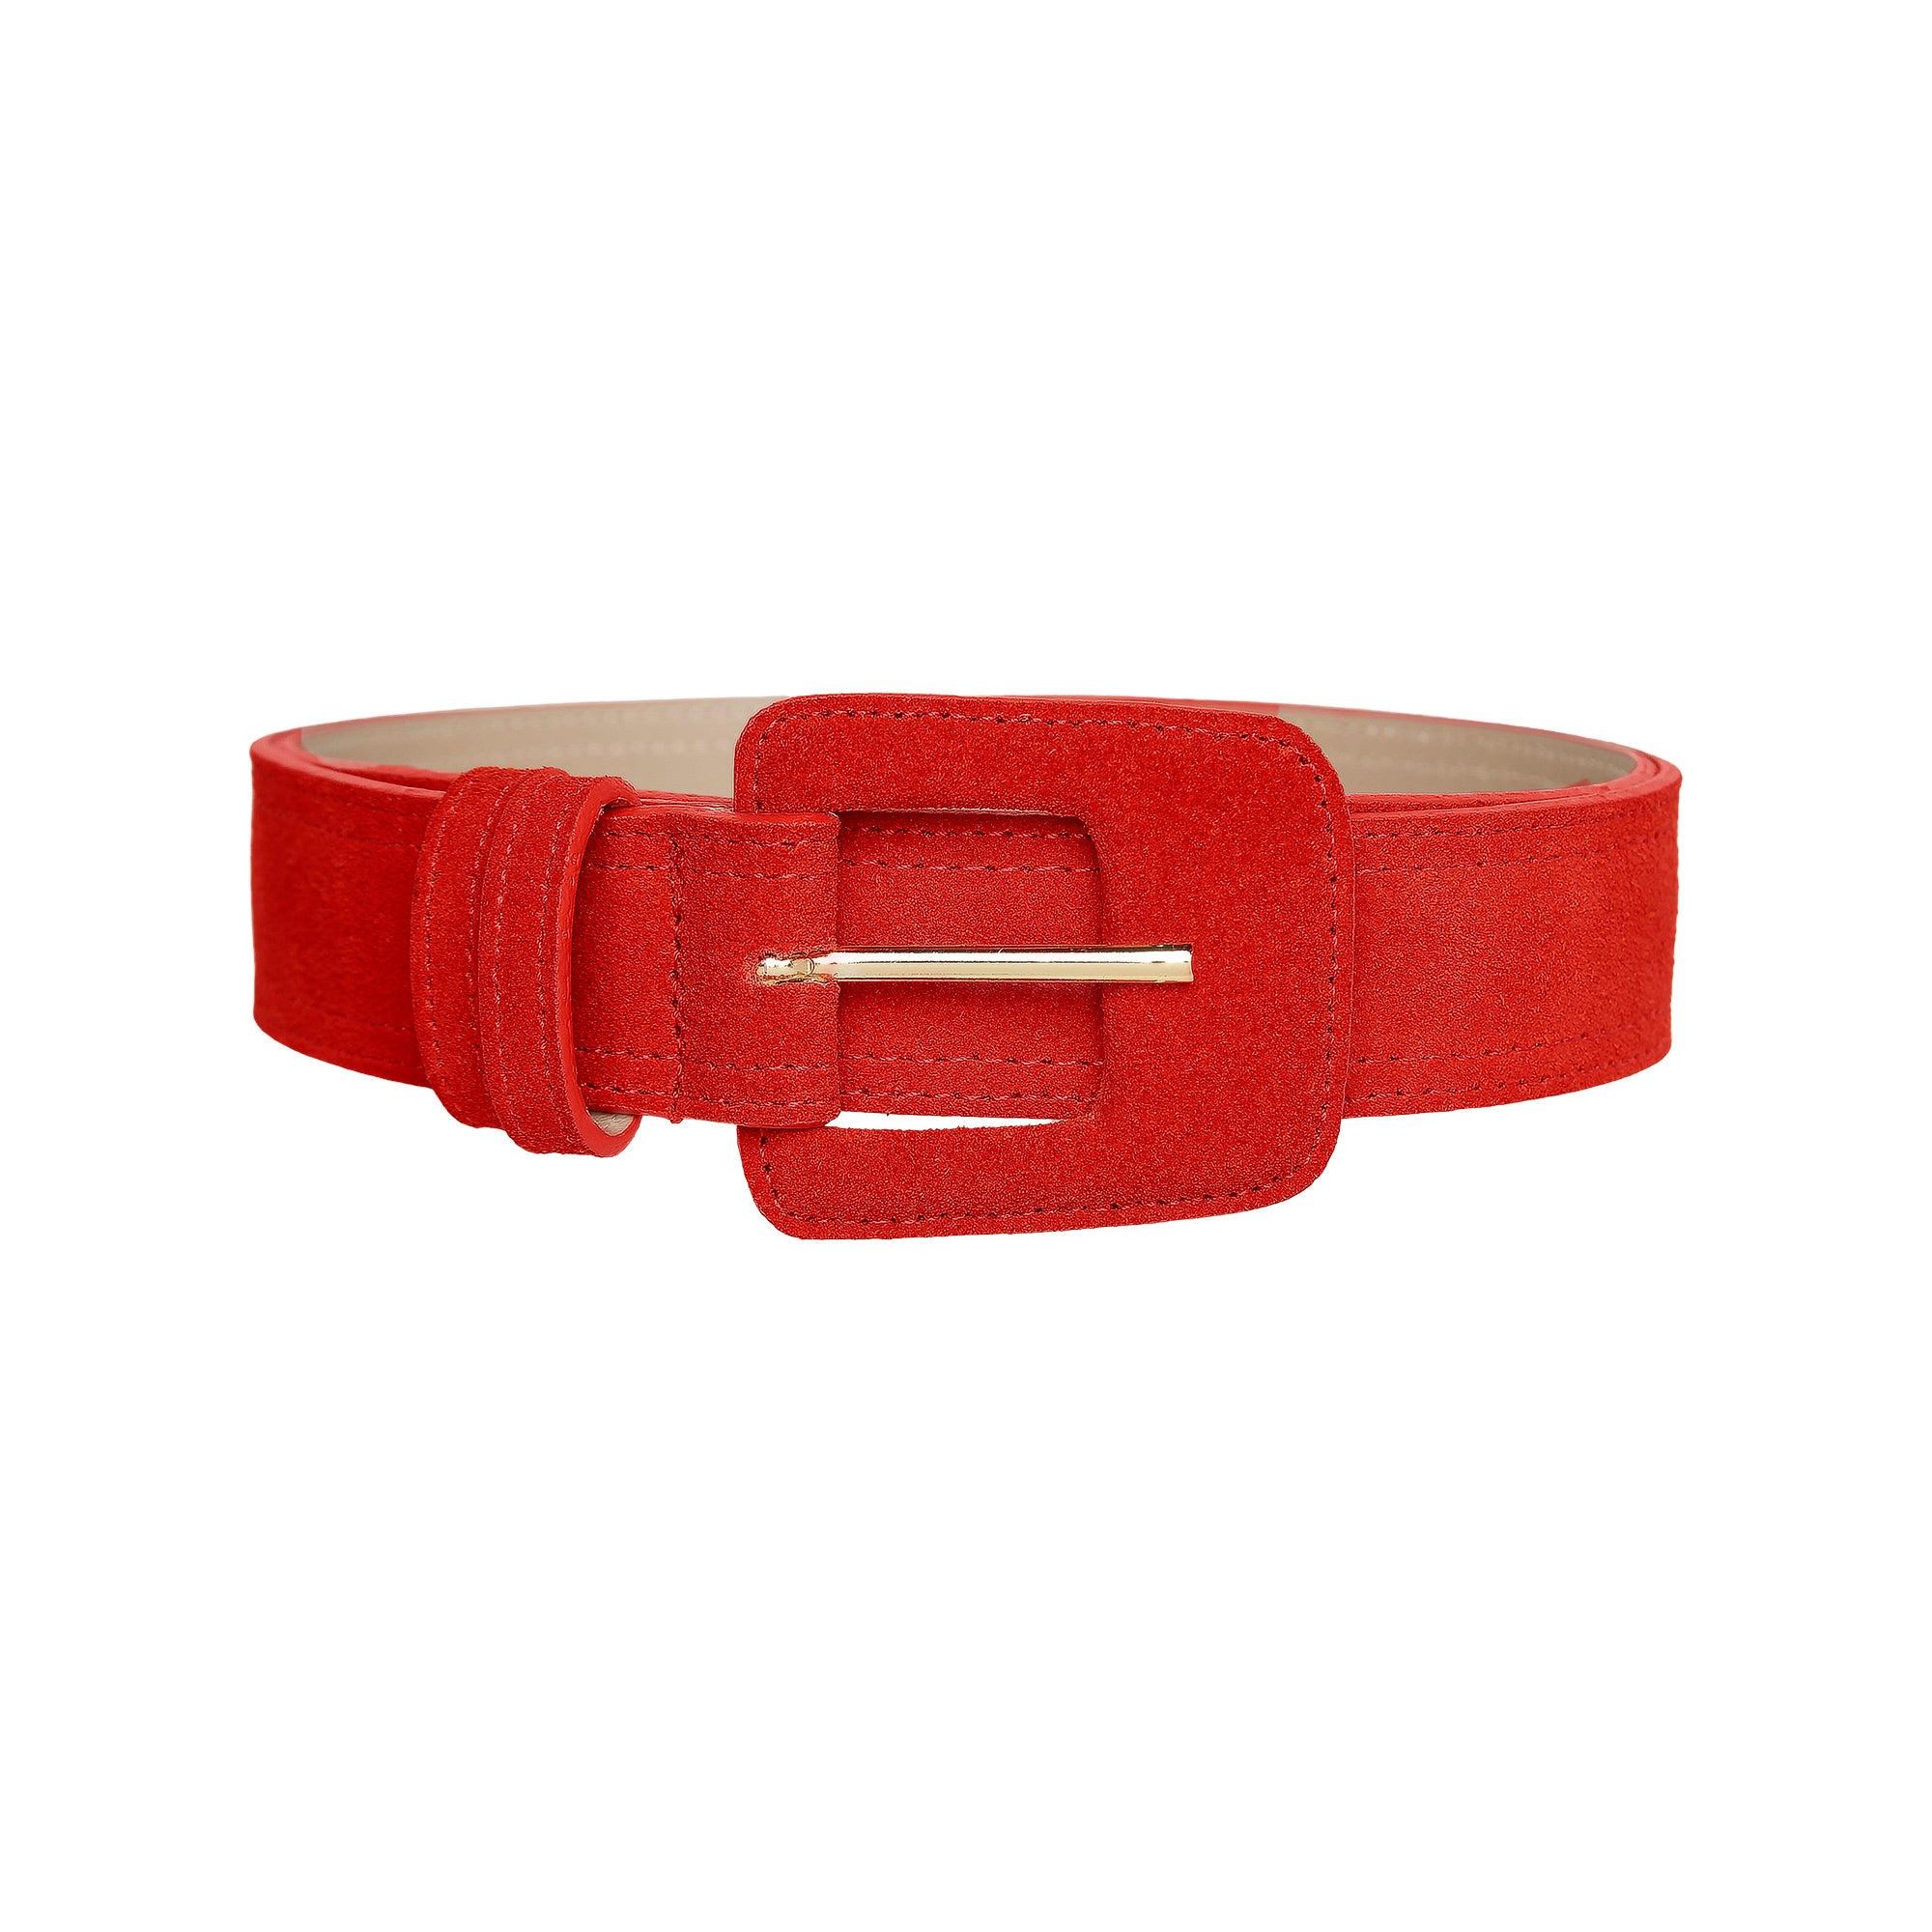 Shop Beltbe Women's Suede Rectangle Buckle Belt - Red